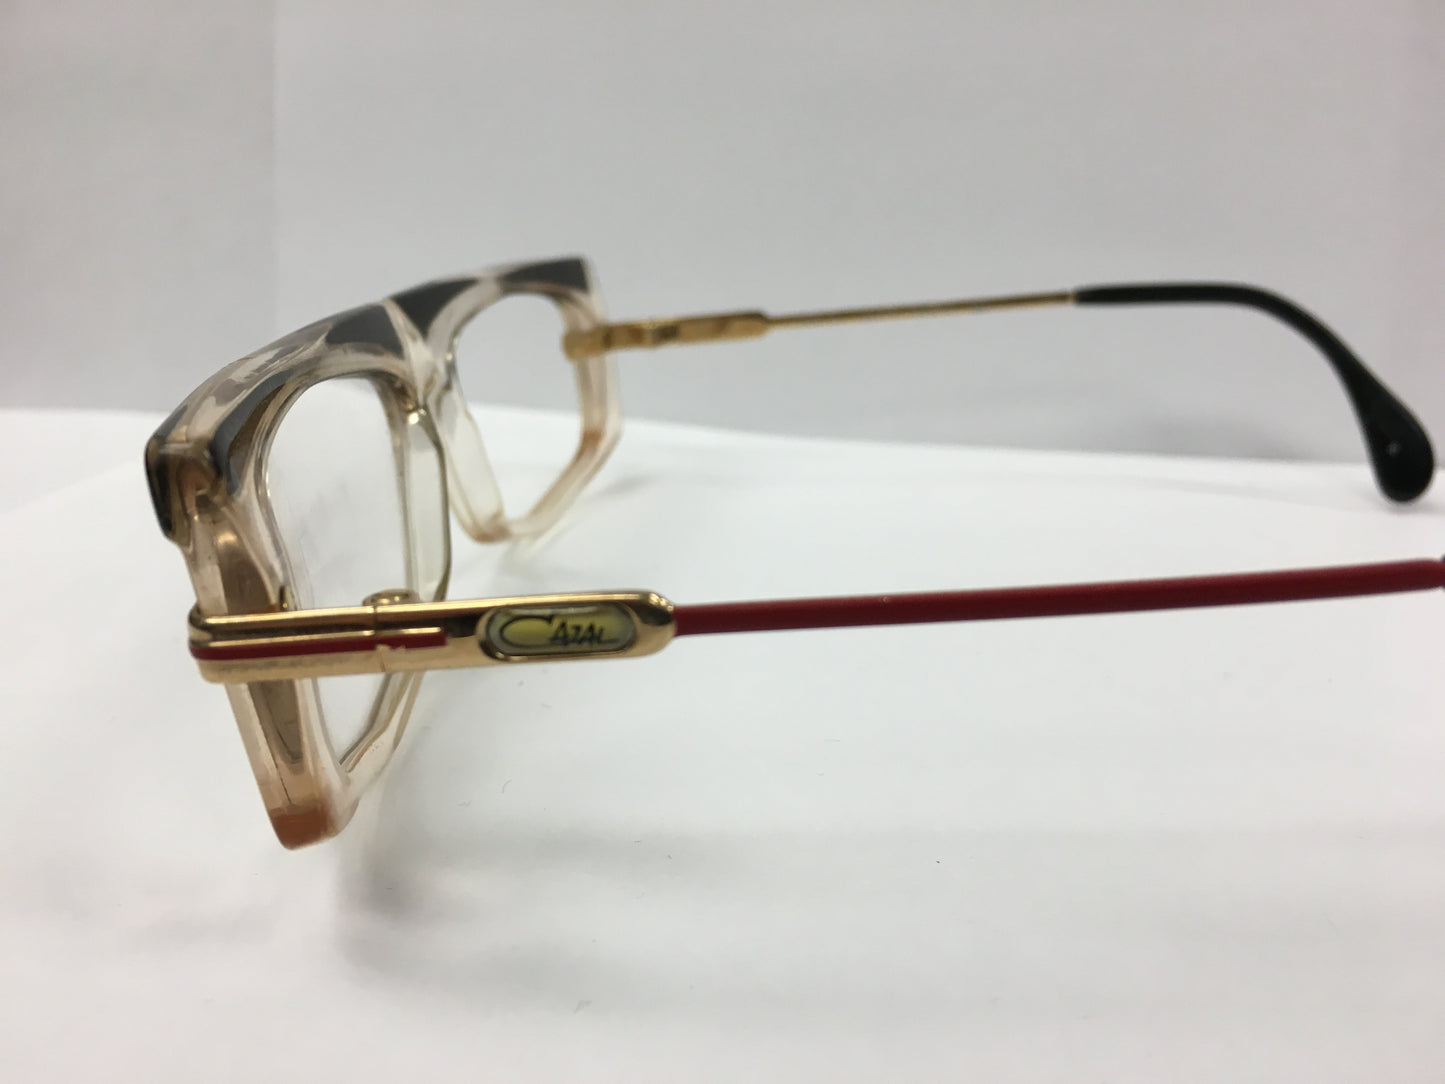 Vintage Cazal Eye glasses